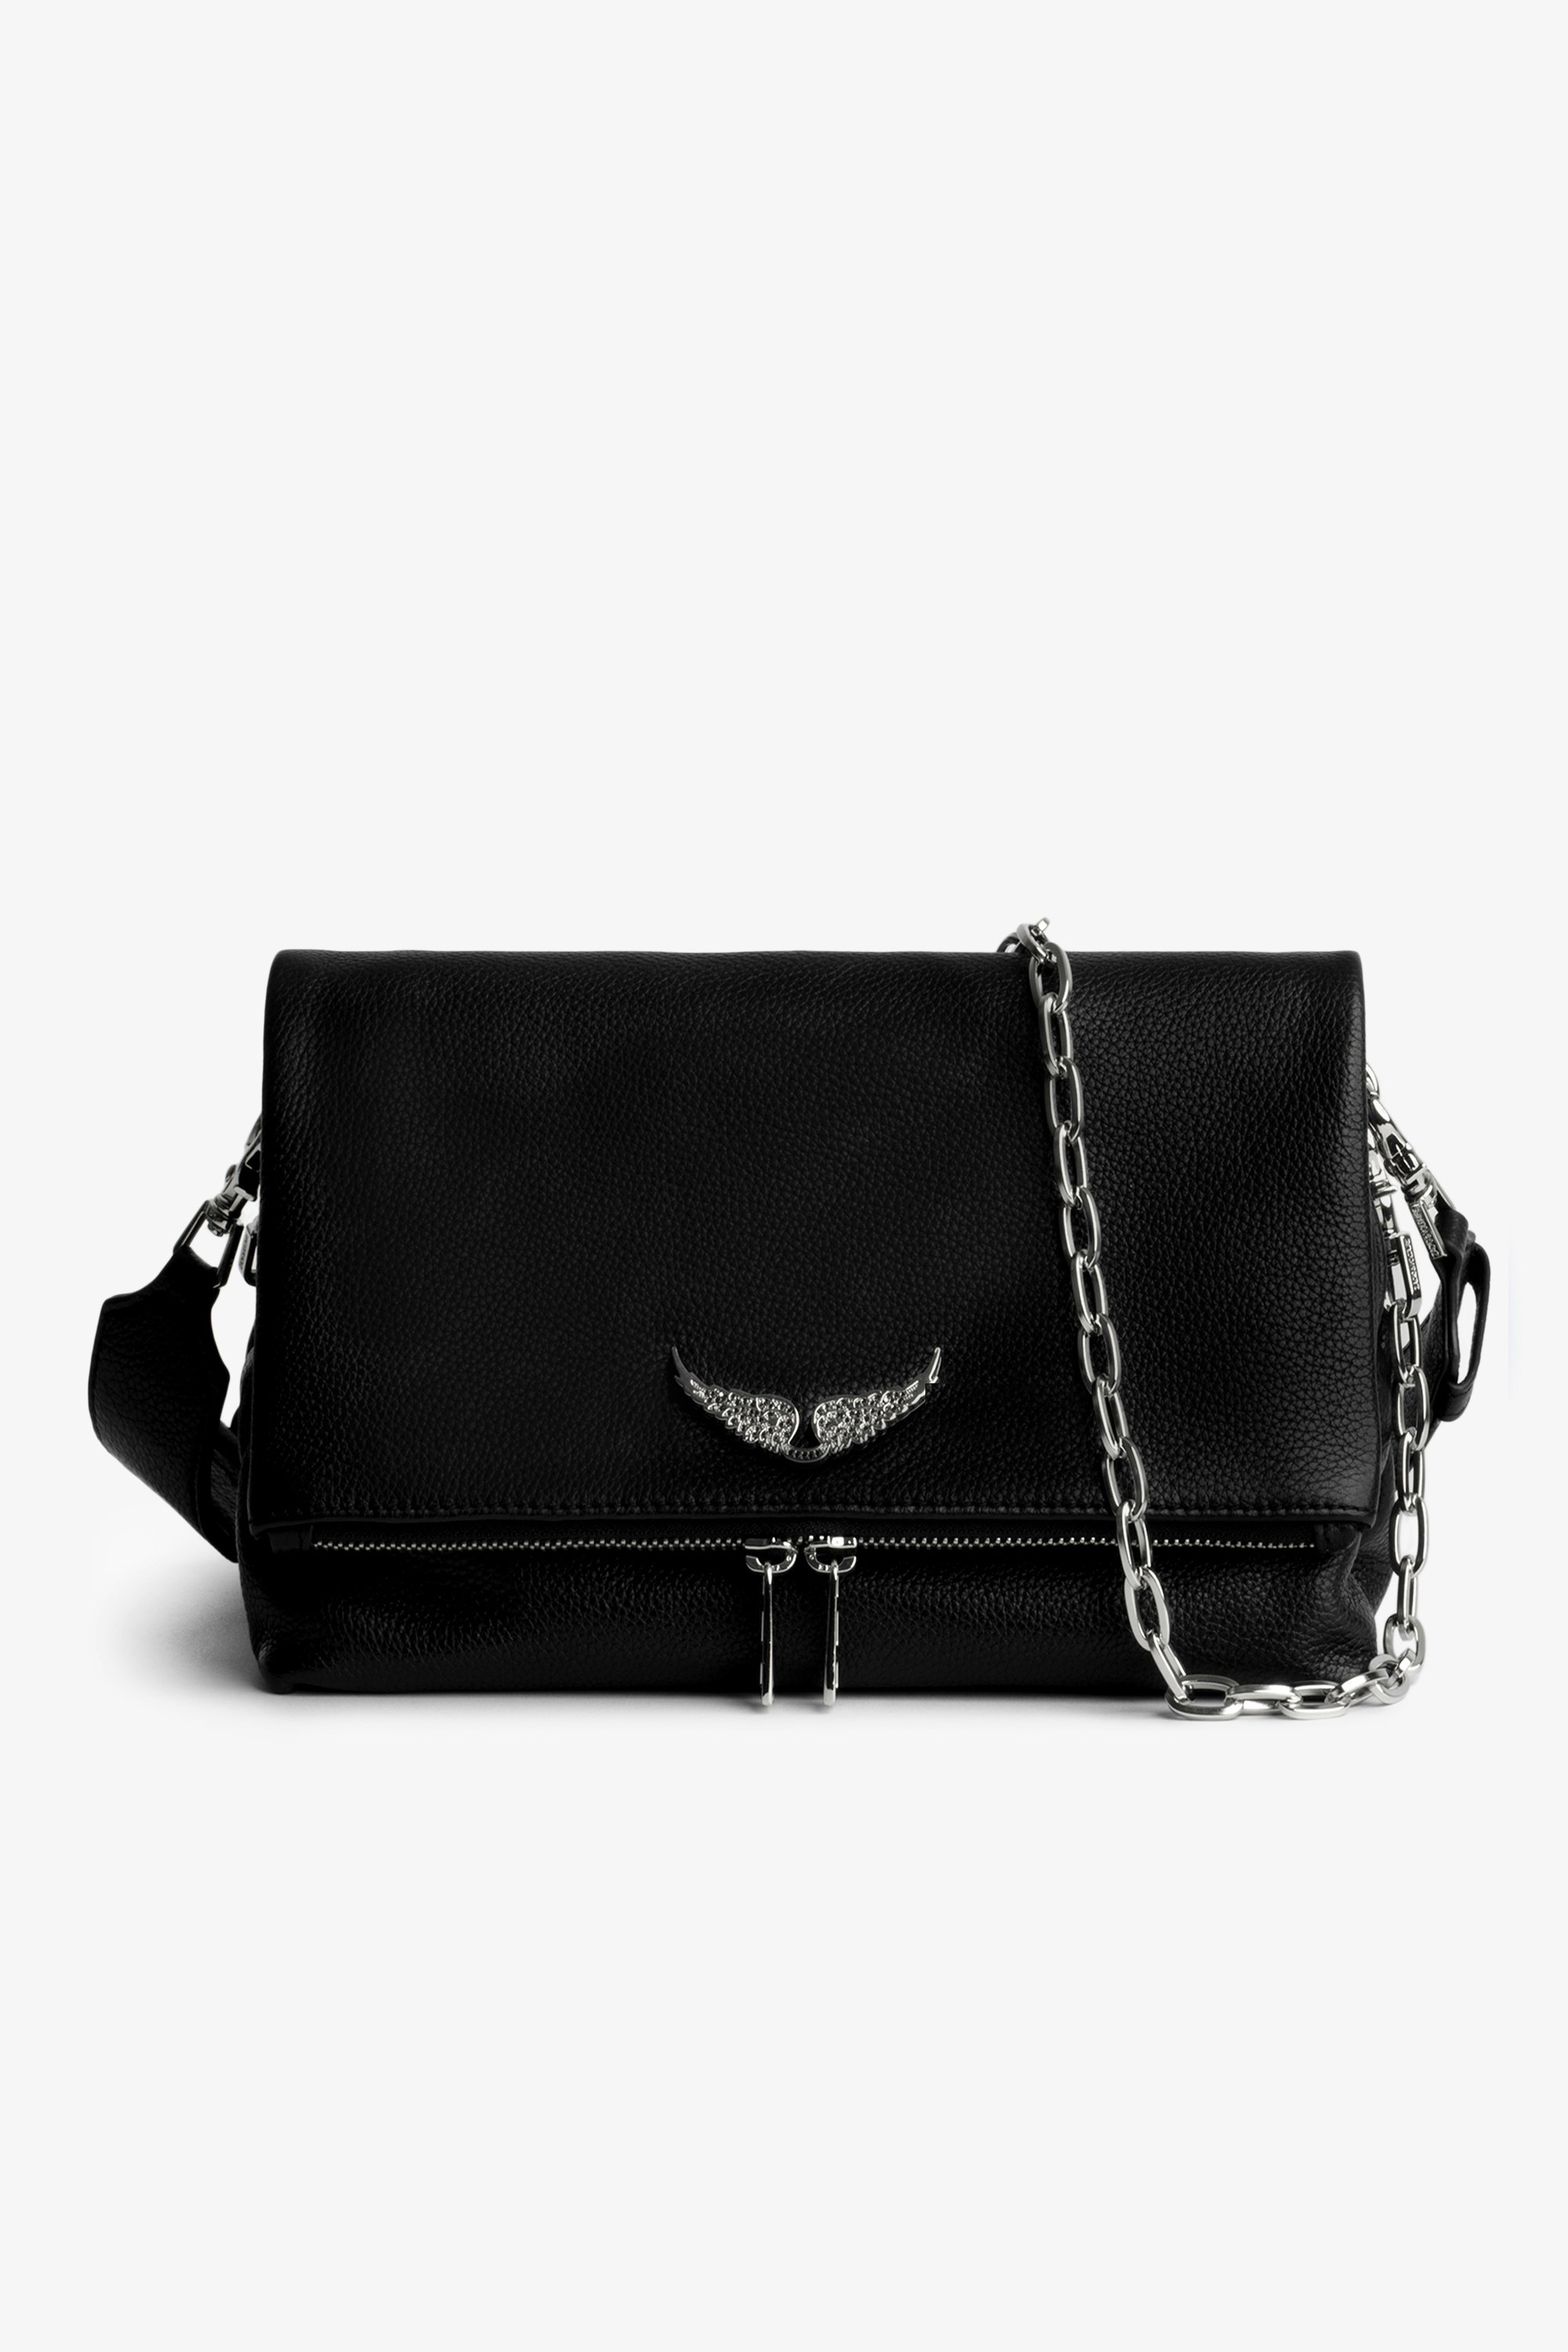 Tasche Rocky Swing Your Wings Damentasche Rocky aus schwarzem Leder mit silberfarbener Metallkette